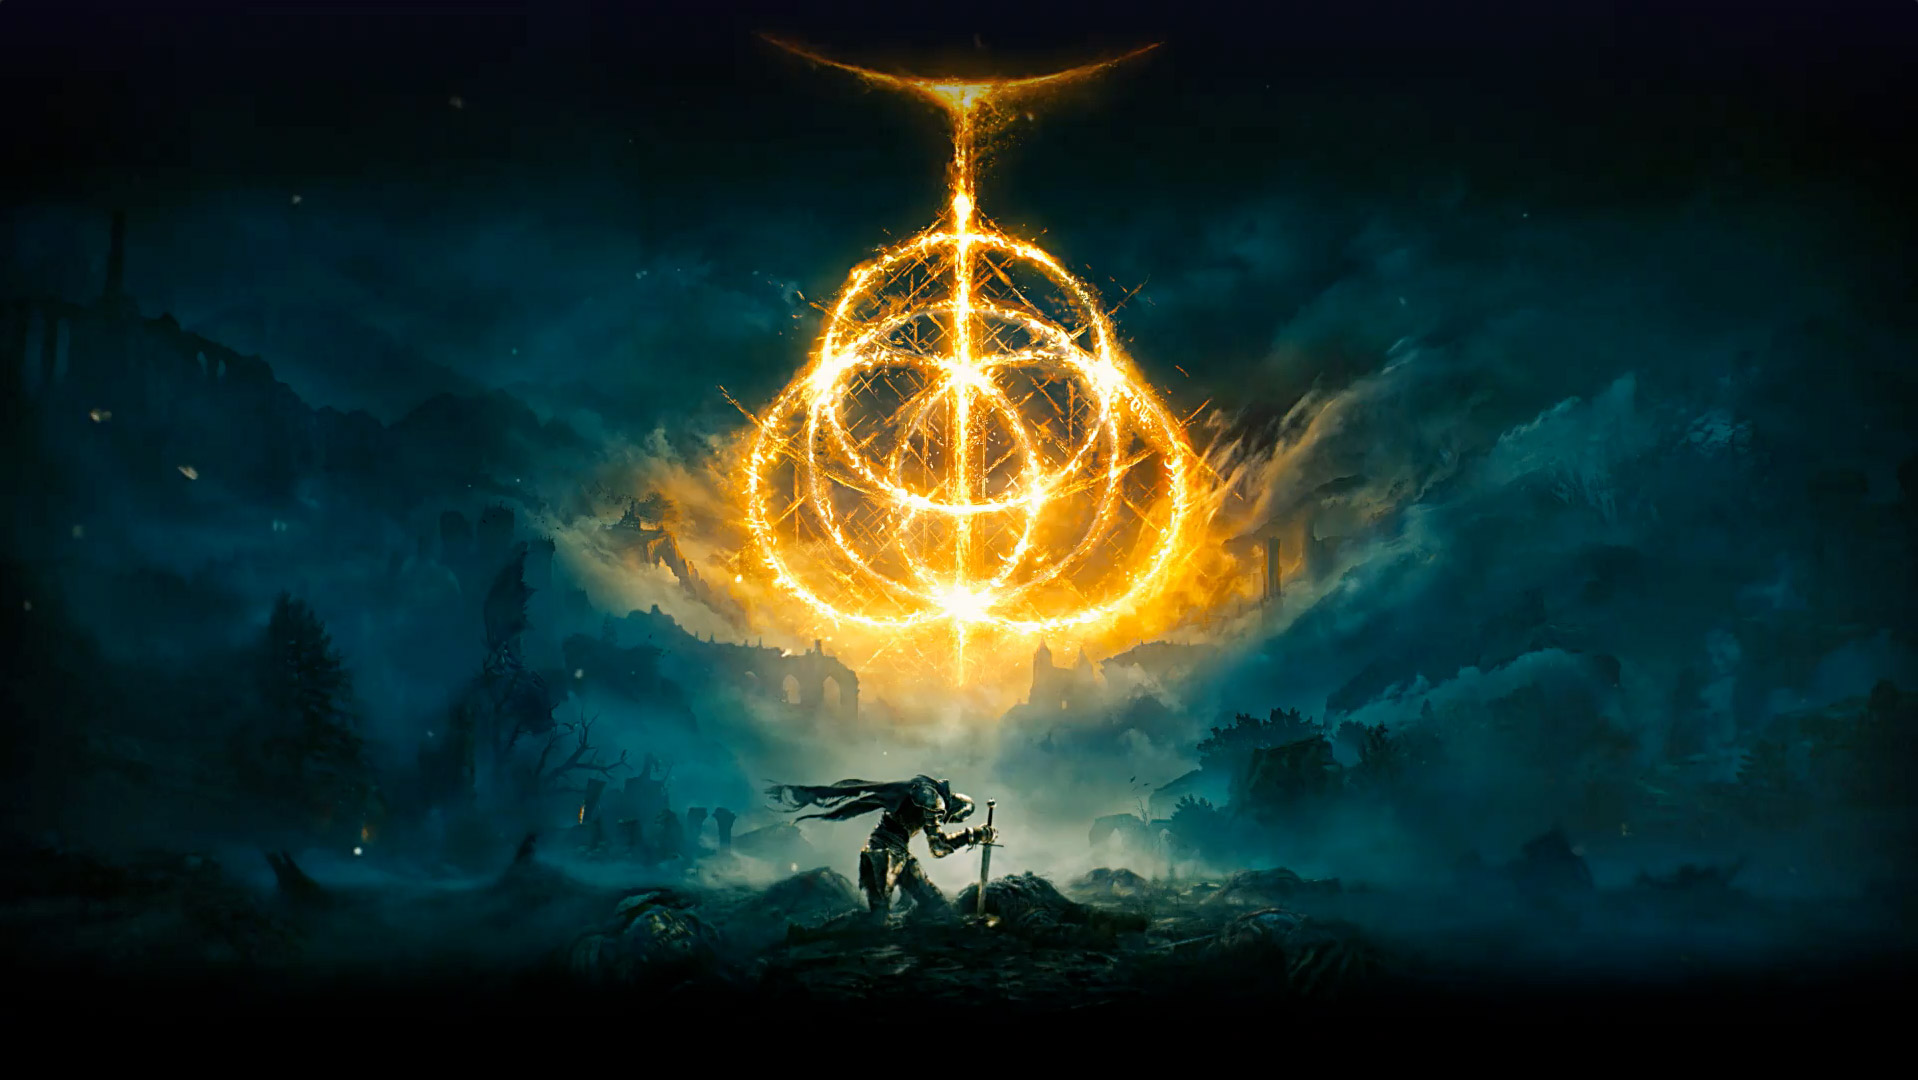 Elden Ring. Plusieurs anneaux enflammés créant le symbole d’Elden Ring. Personnage de chevalier avec son épée dans le sol dans une région dévastée avec du brouillard.